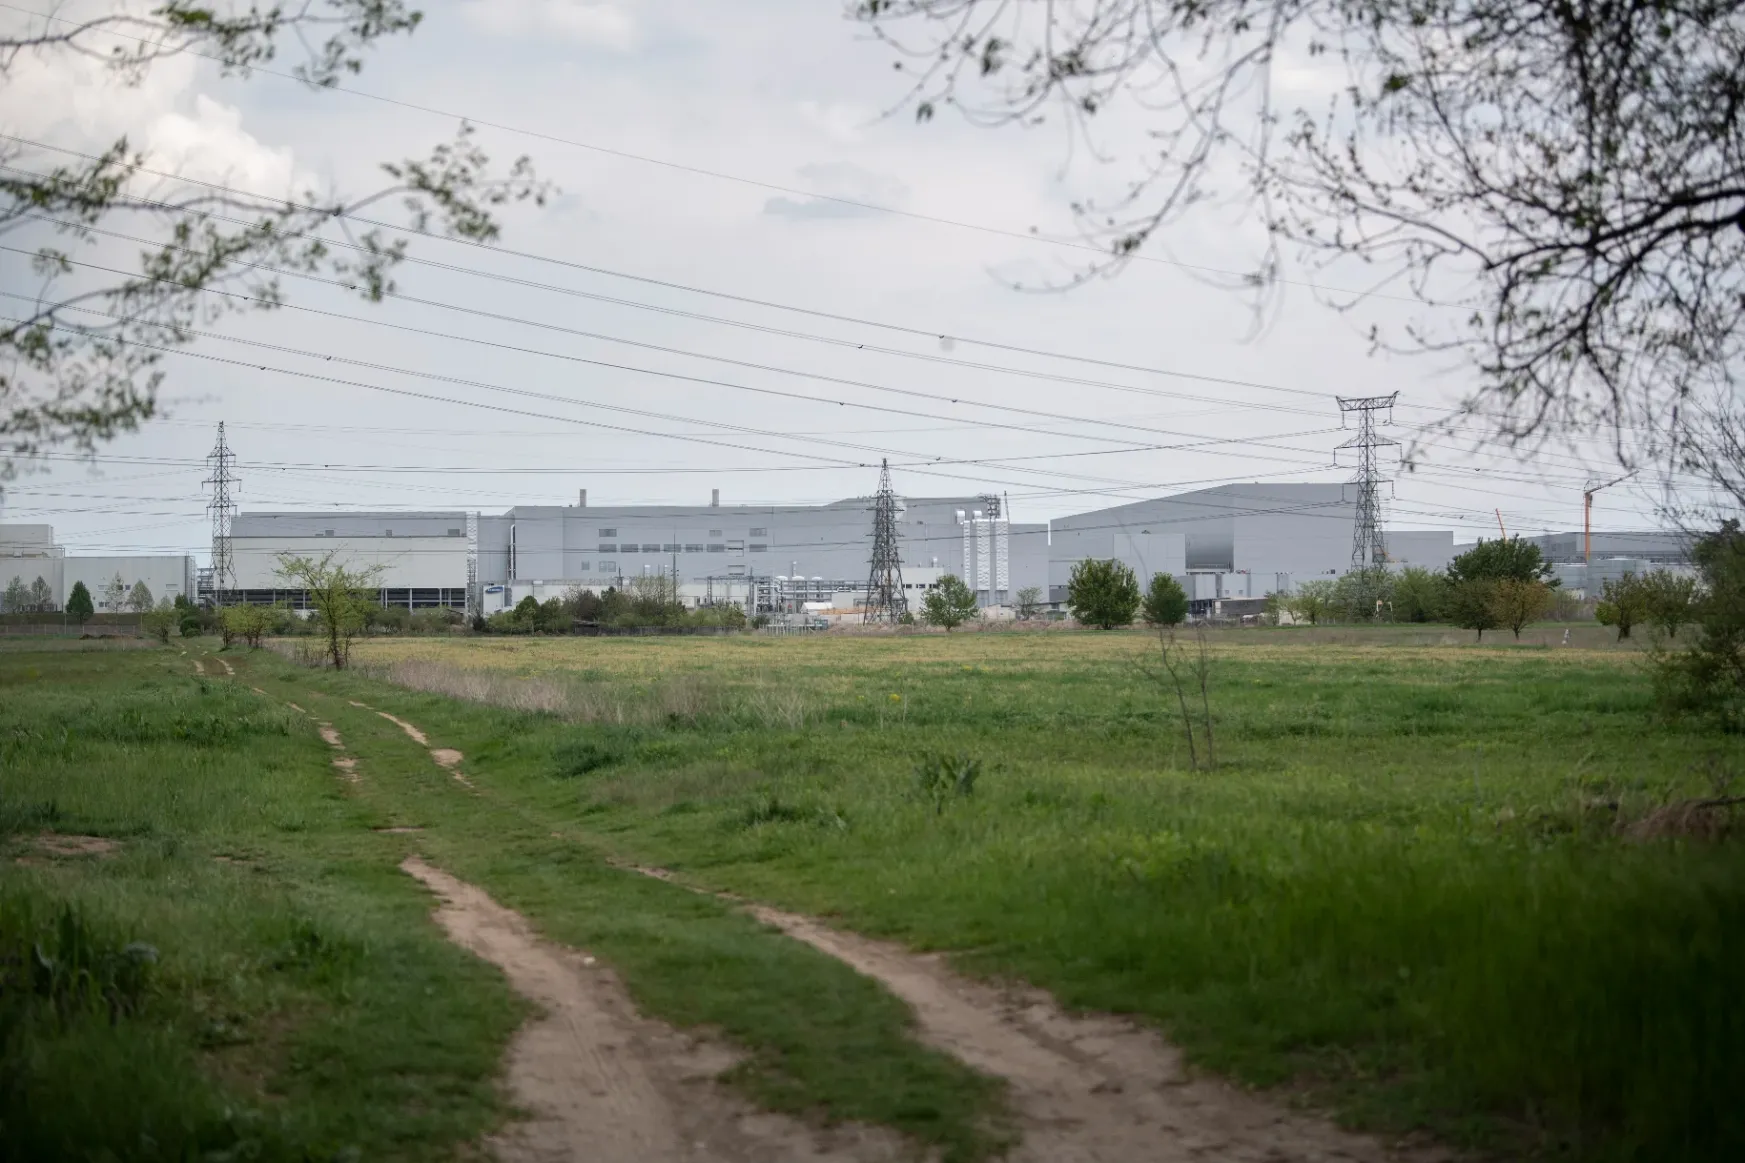 Gödi Samsung-gyár – ahol ilyen anyagok kerülnek a talajba, ott már nagy probléma van